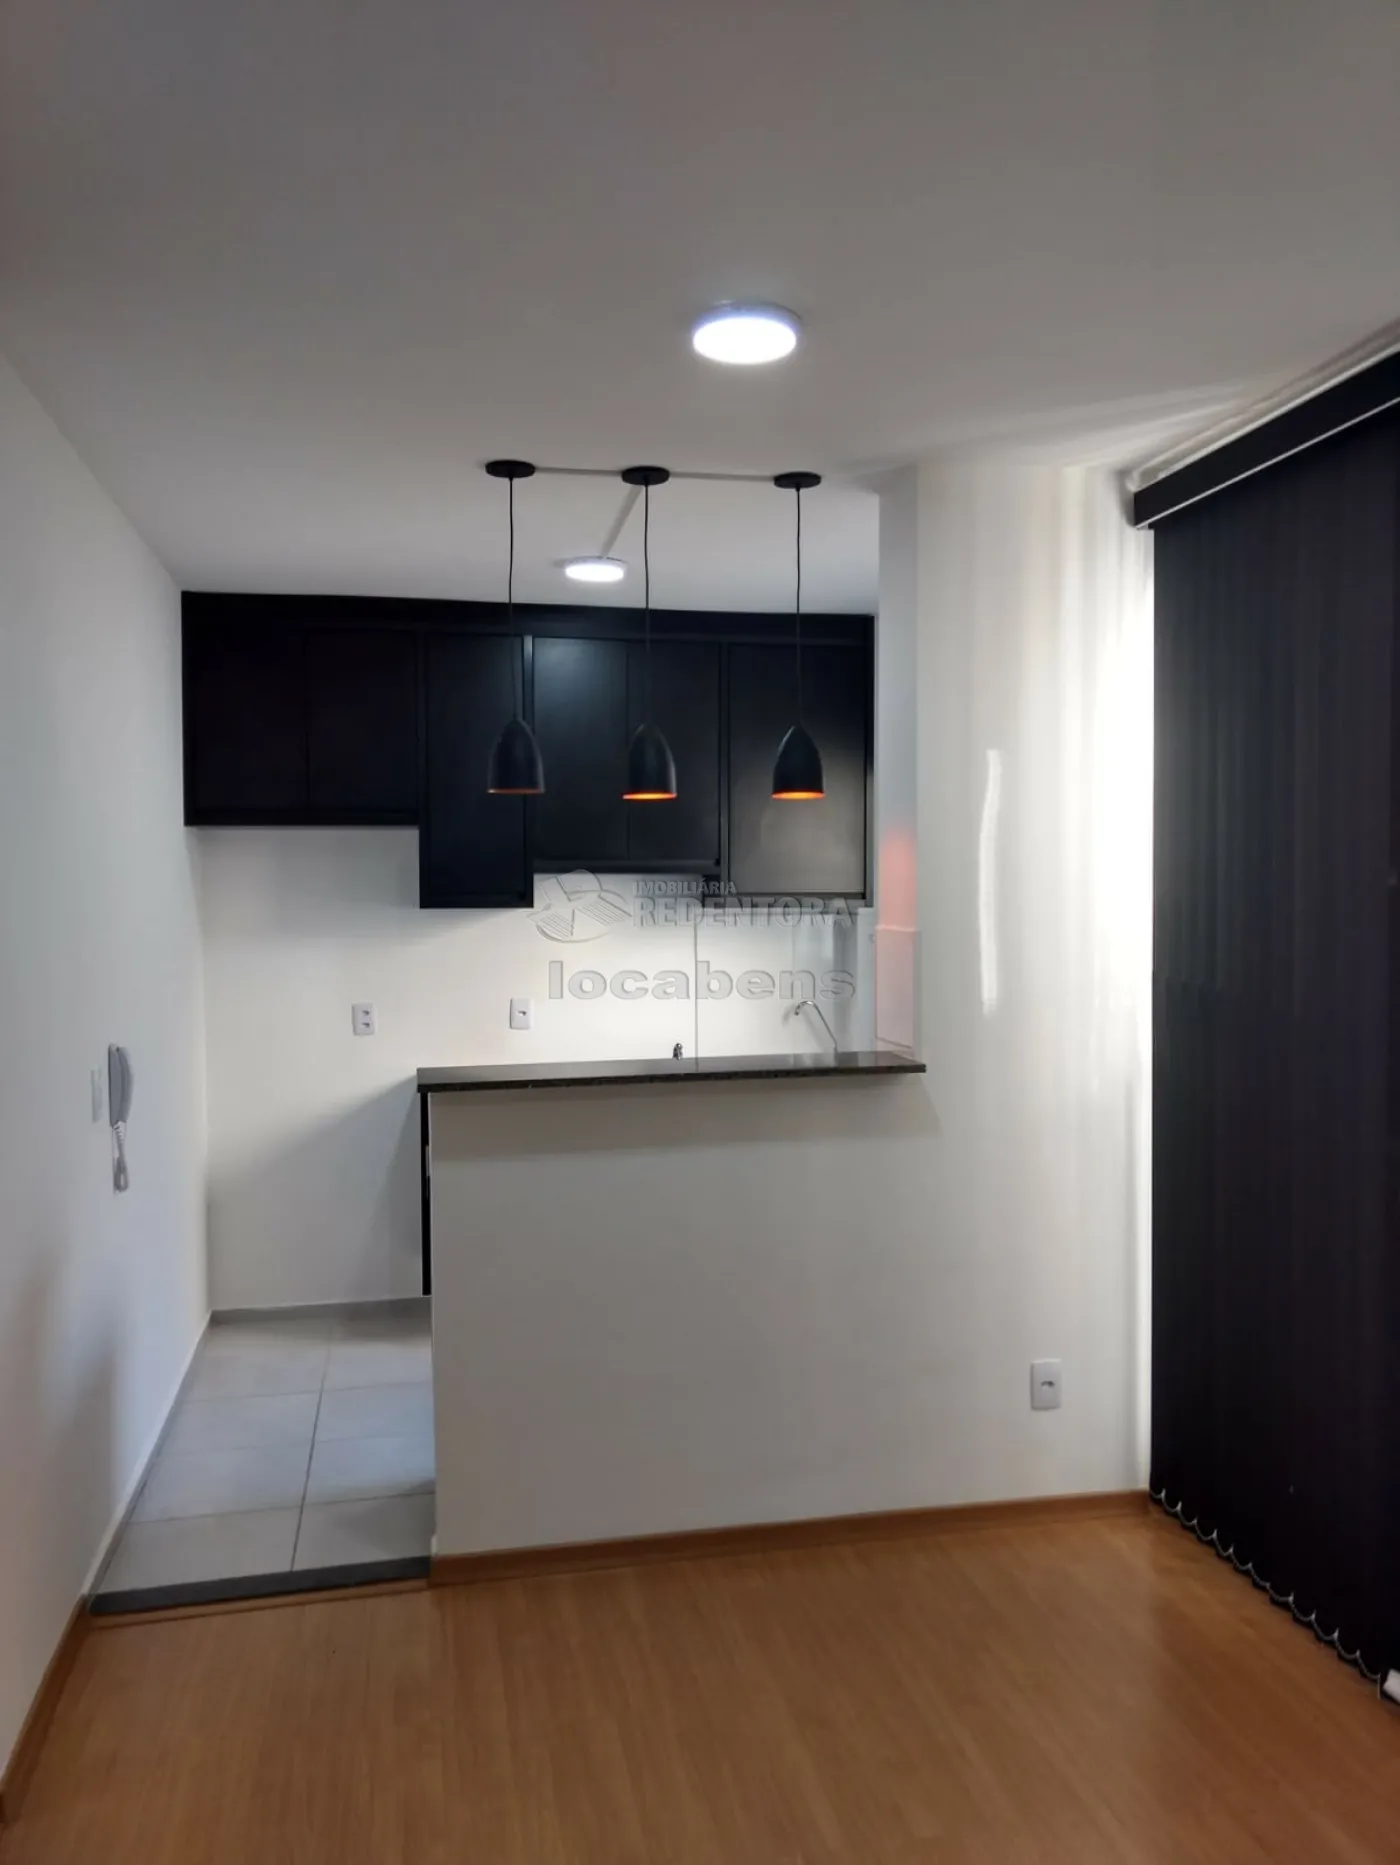 Alugar Apartamento / Padrão em Mirassol R$ 950,00 - Foto 2